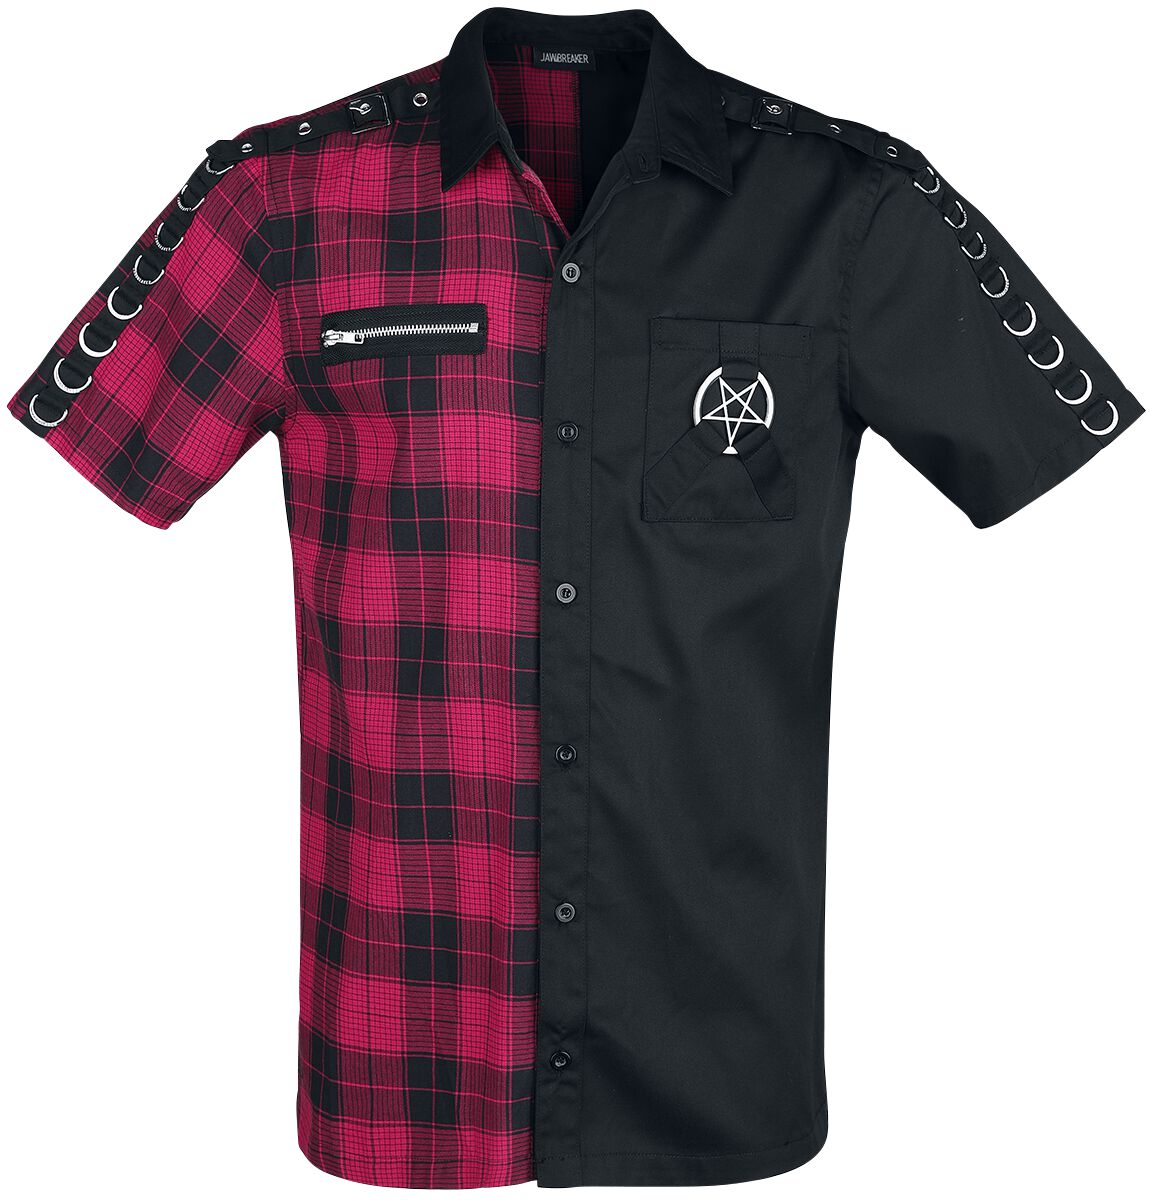 Jawbreaker - Gothic Kurzarmhemd - Split Shirt - S bis XXL - für Männer - Größe L - schwarz/rot